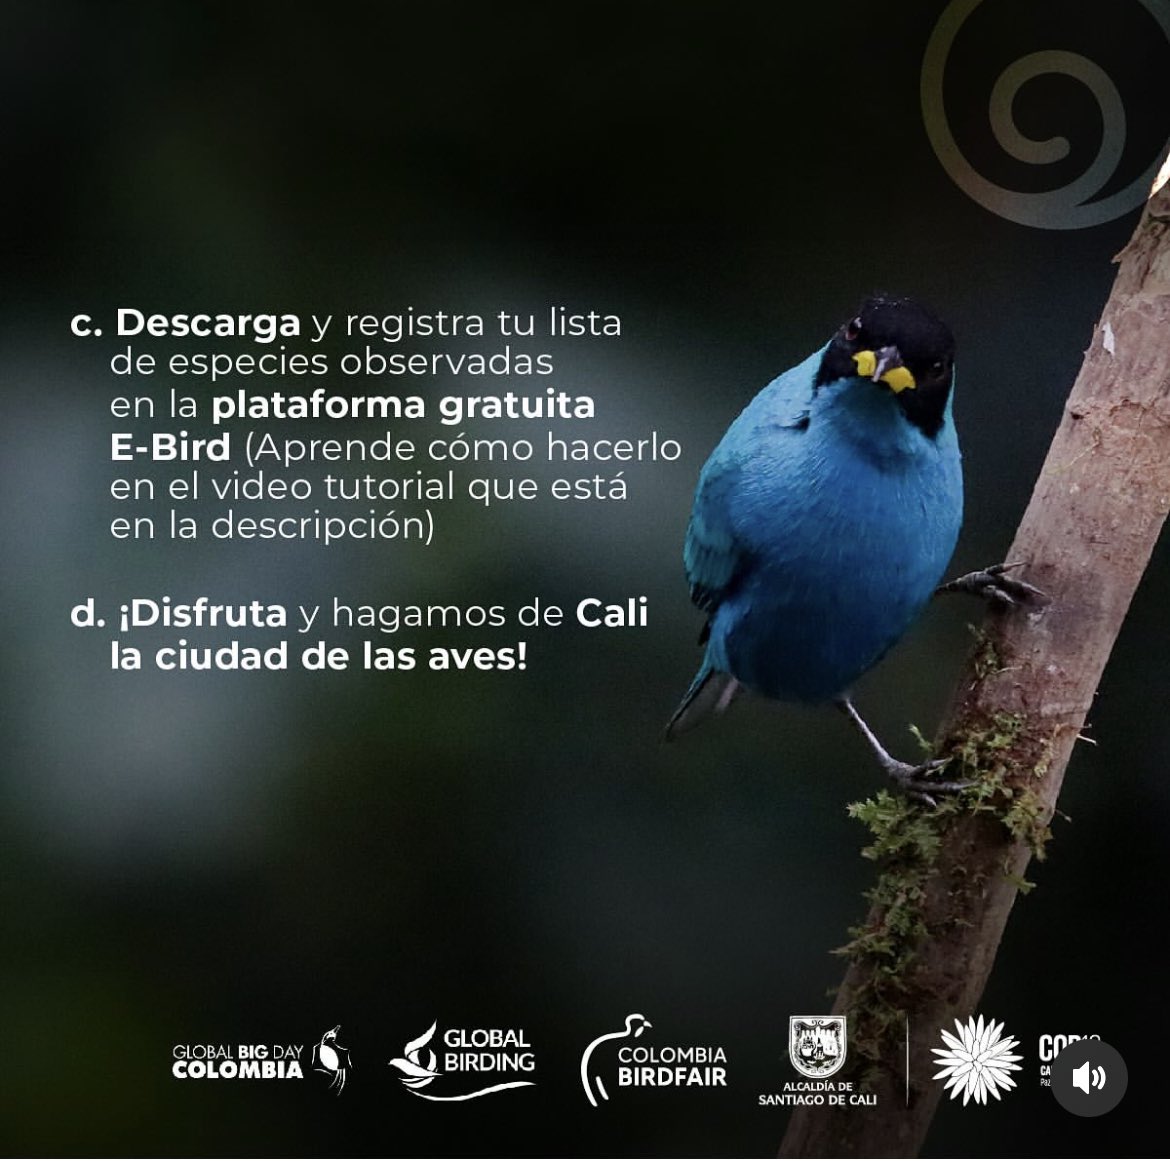 Colombia está lista para unirse a la pajareada más importante del año #GlobalBigDay este sábado 11 May 🗓✅ participa y sube tus listados de aves en @Team_eBird 

#birdsuniteourworld #globalbigday
#cadaavecuenta 
#colombiapaísdelasaves